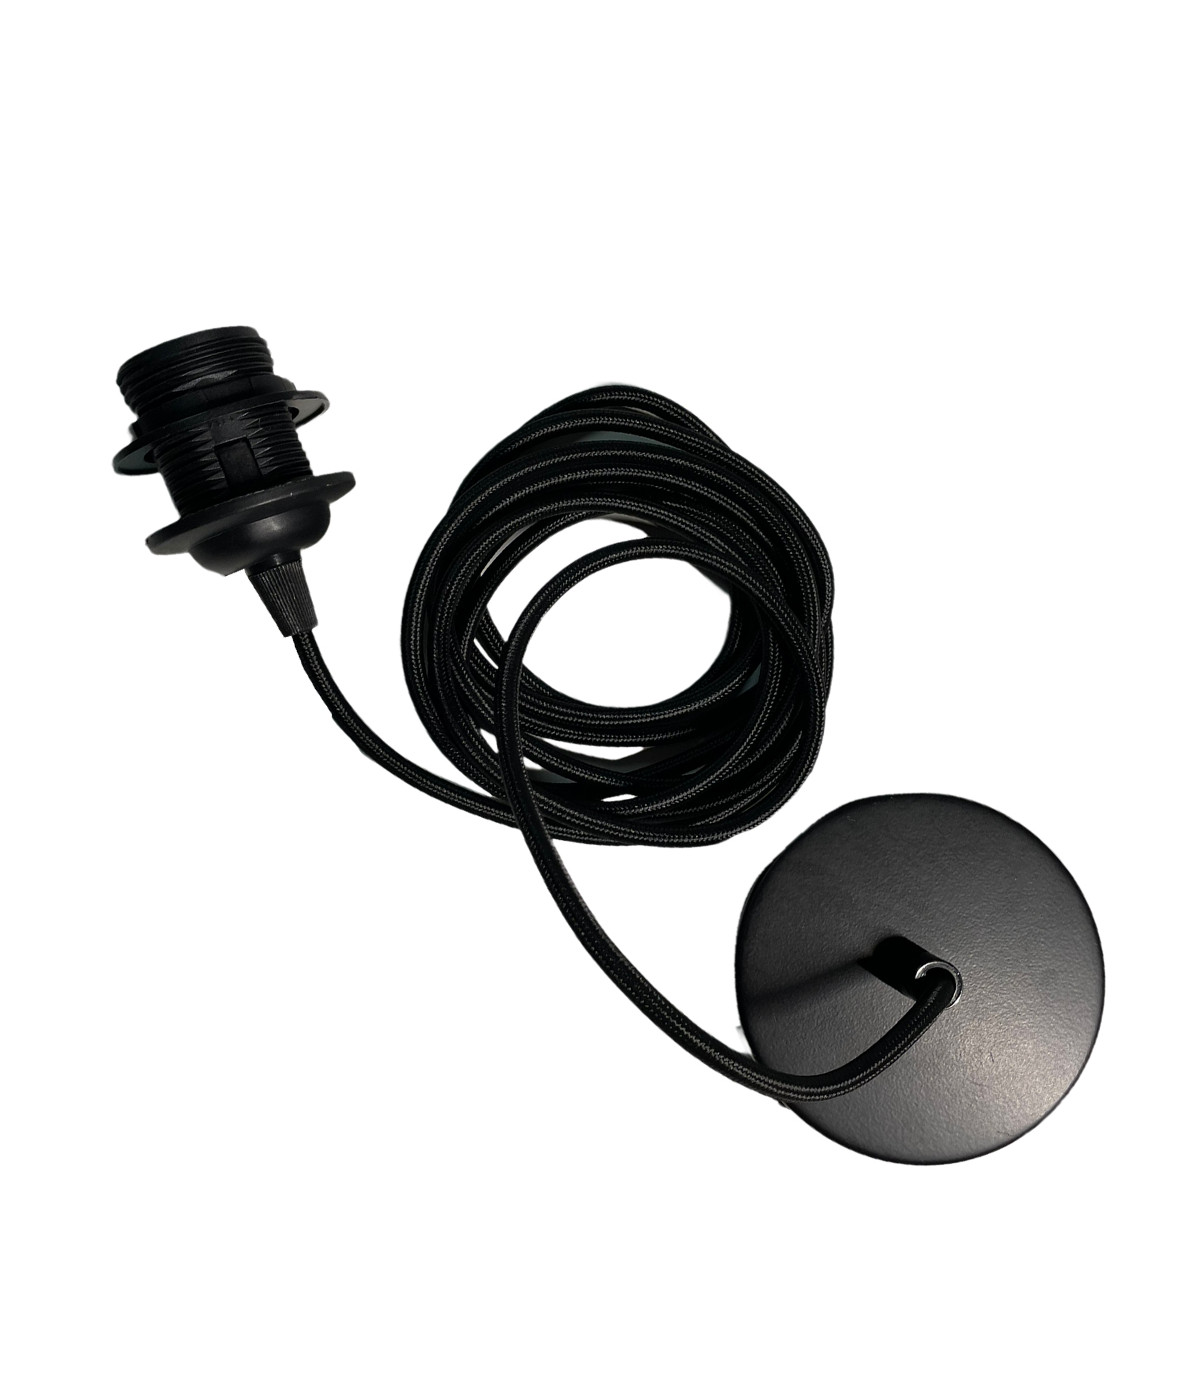 Câble pour suspension Noir 3m